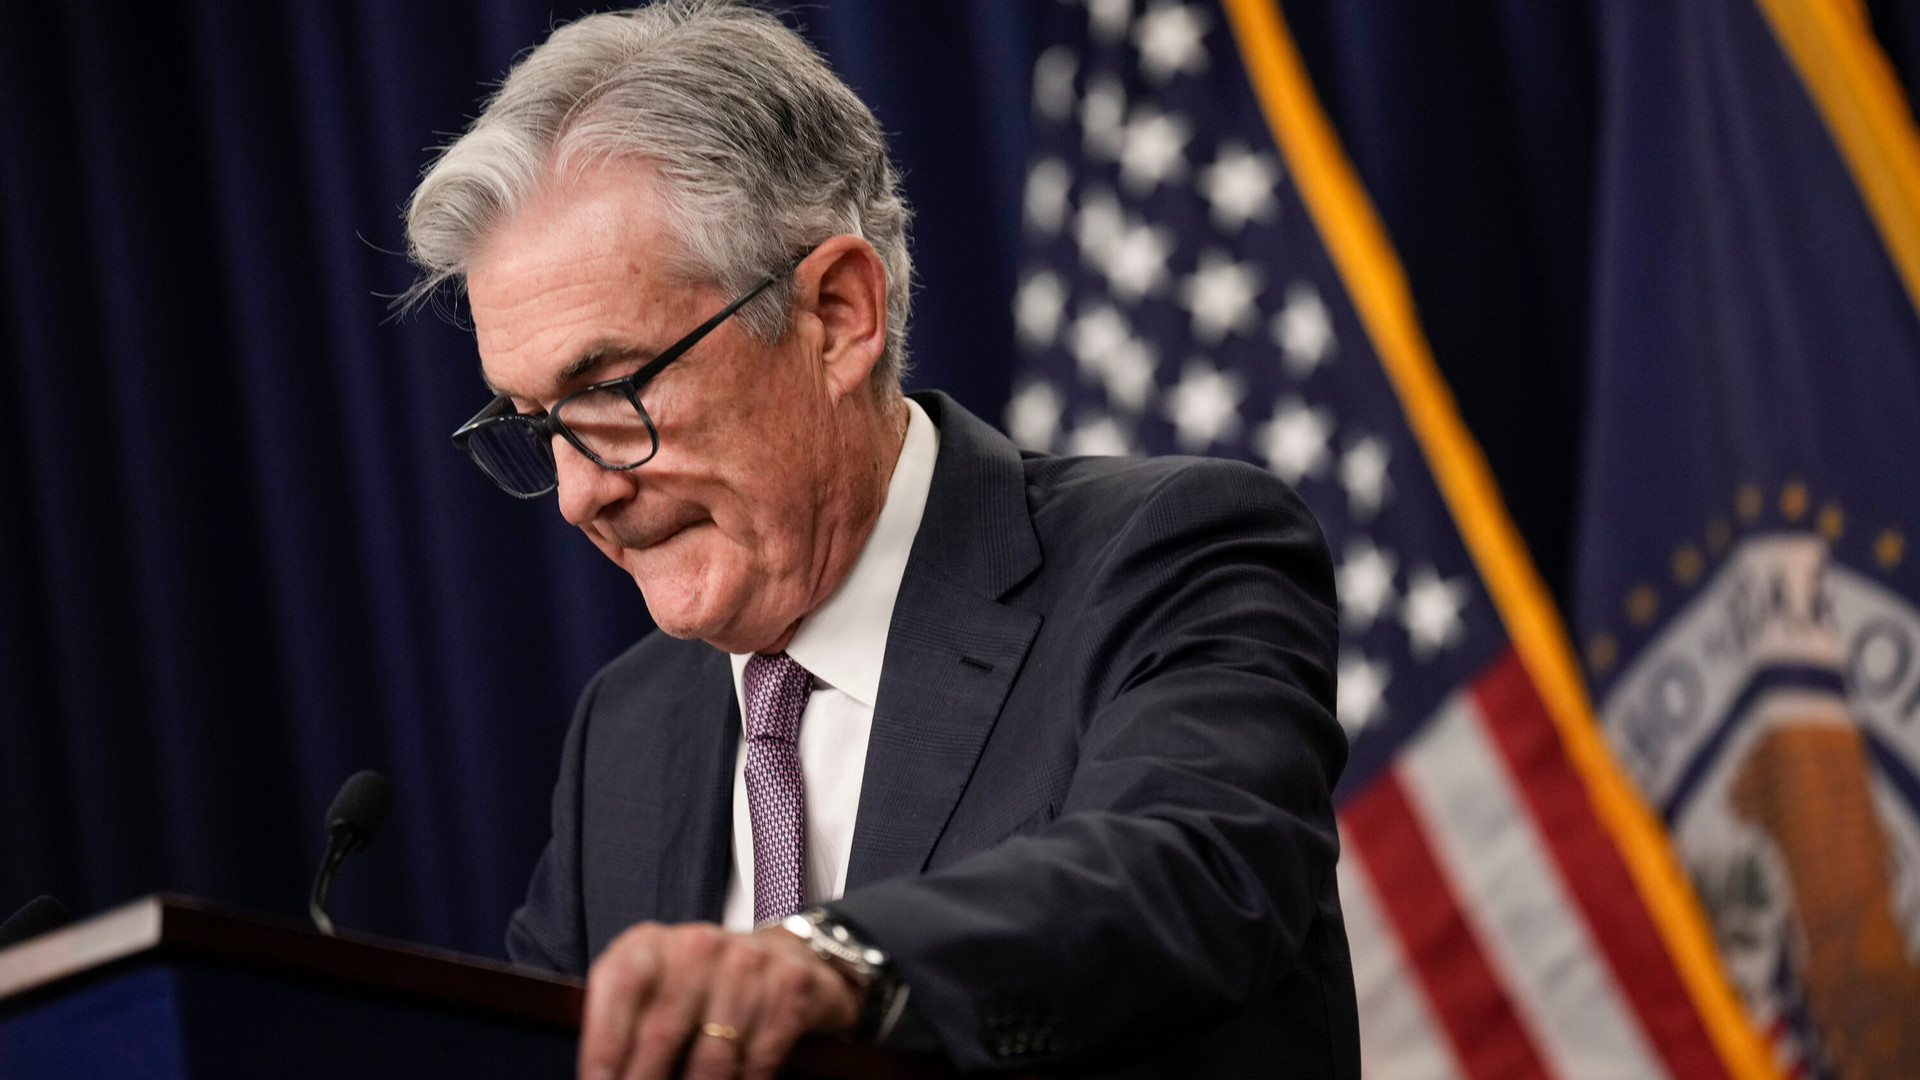 Cuộc họp chính sách sắp diễn ra, Fed đứng trước tình huống khó khăn chưa từng có trong nhiều năm: Nên dừng hay tăng lãi suất? 